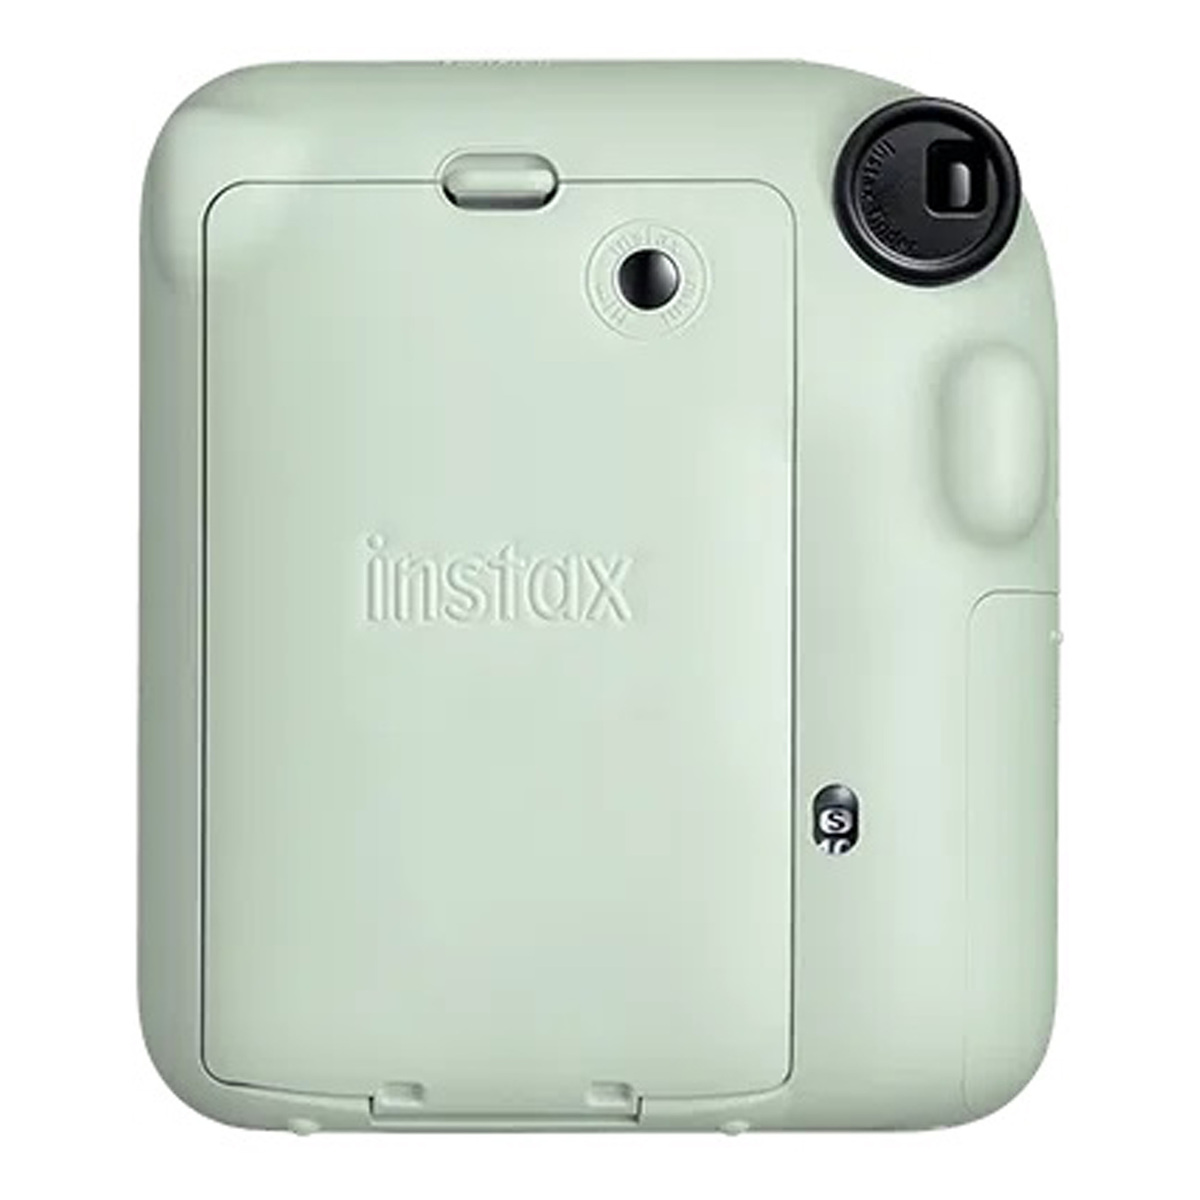 Fujifilm Instax Mini 12 Instant Film Camera, Mint Green